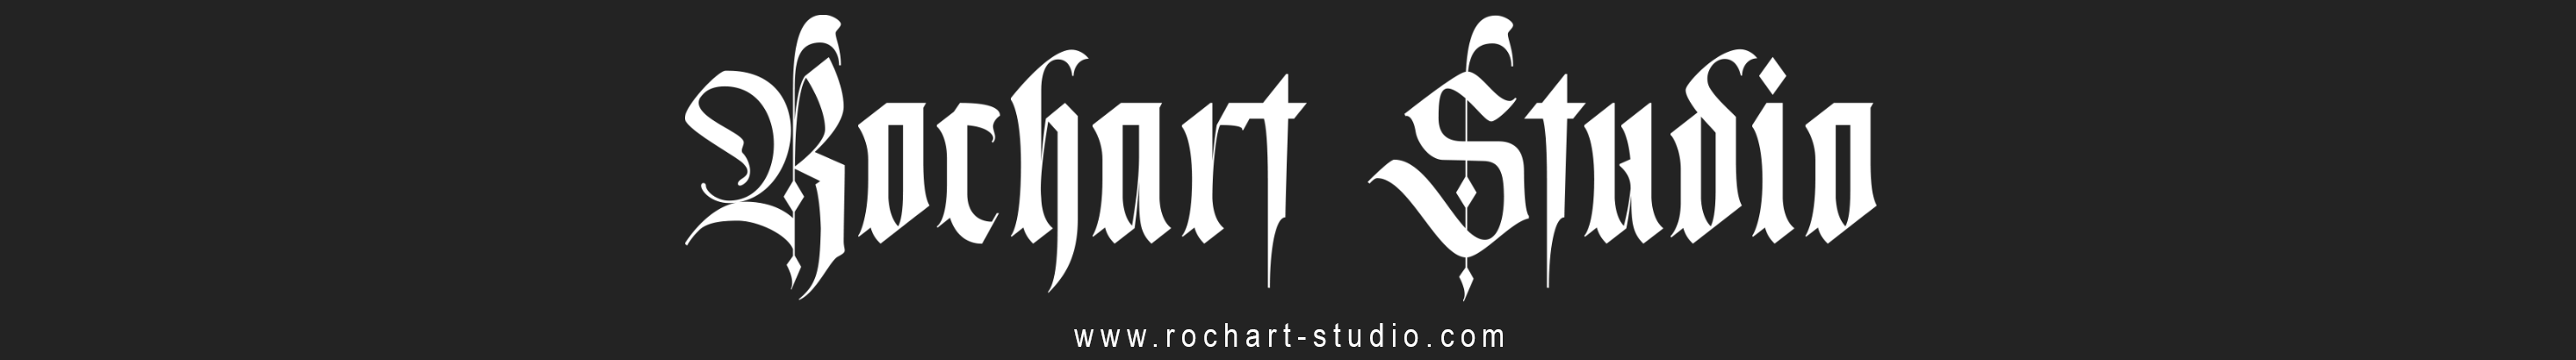 Rochart Project profil başlığı